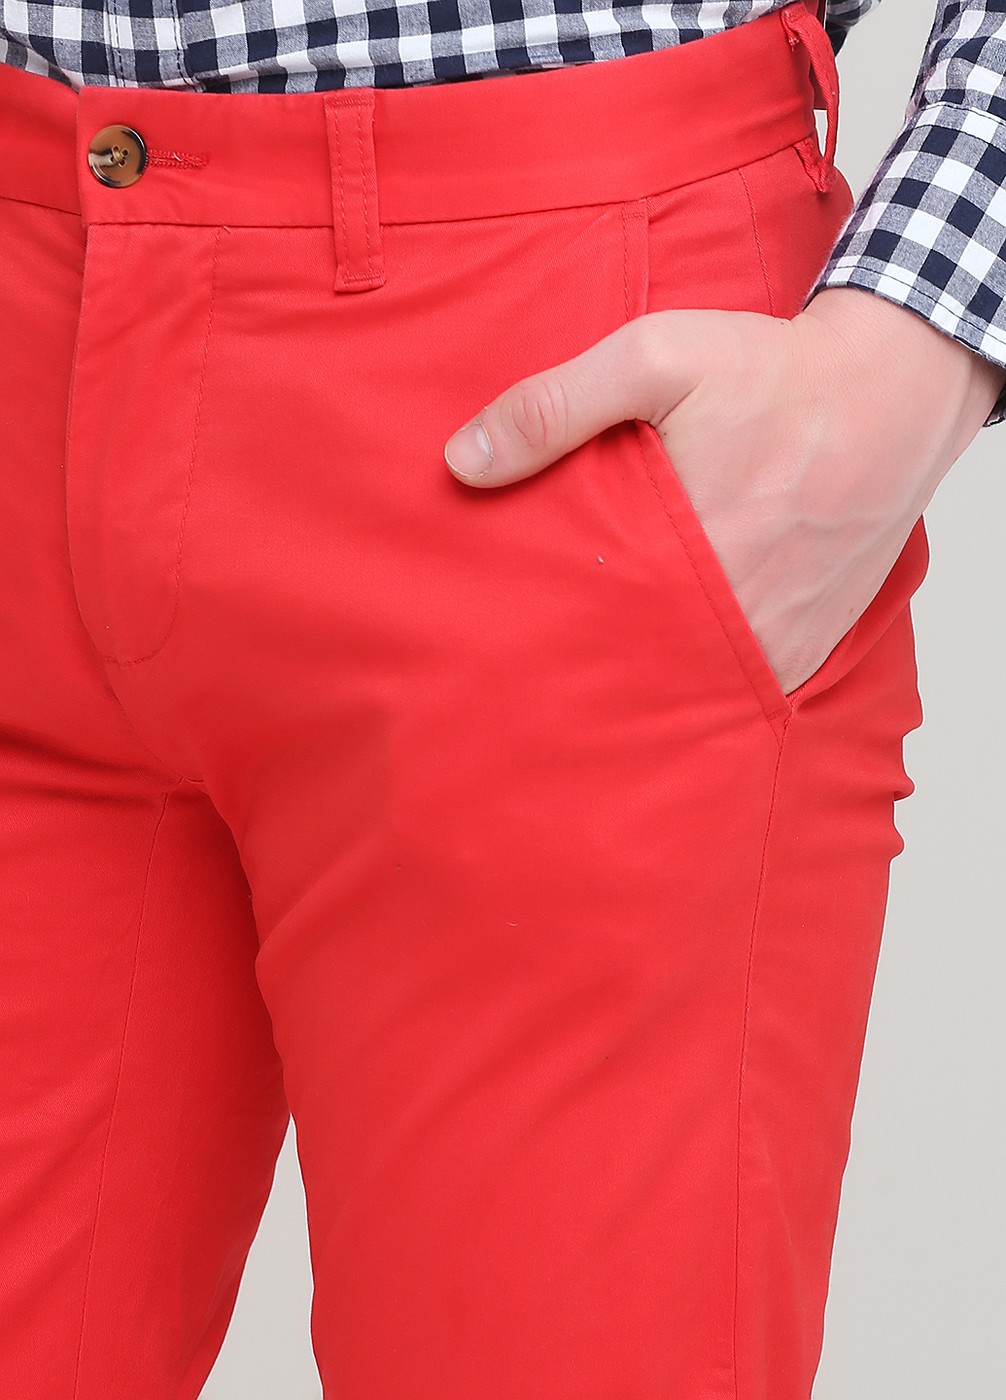 Брюки мужские - брюки Tommy Hilfiger